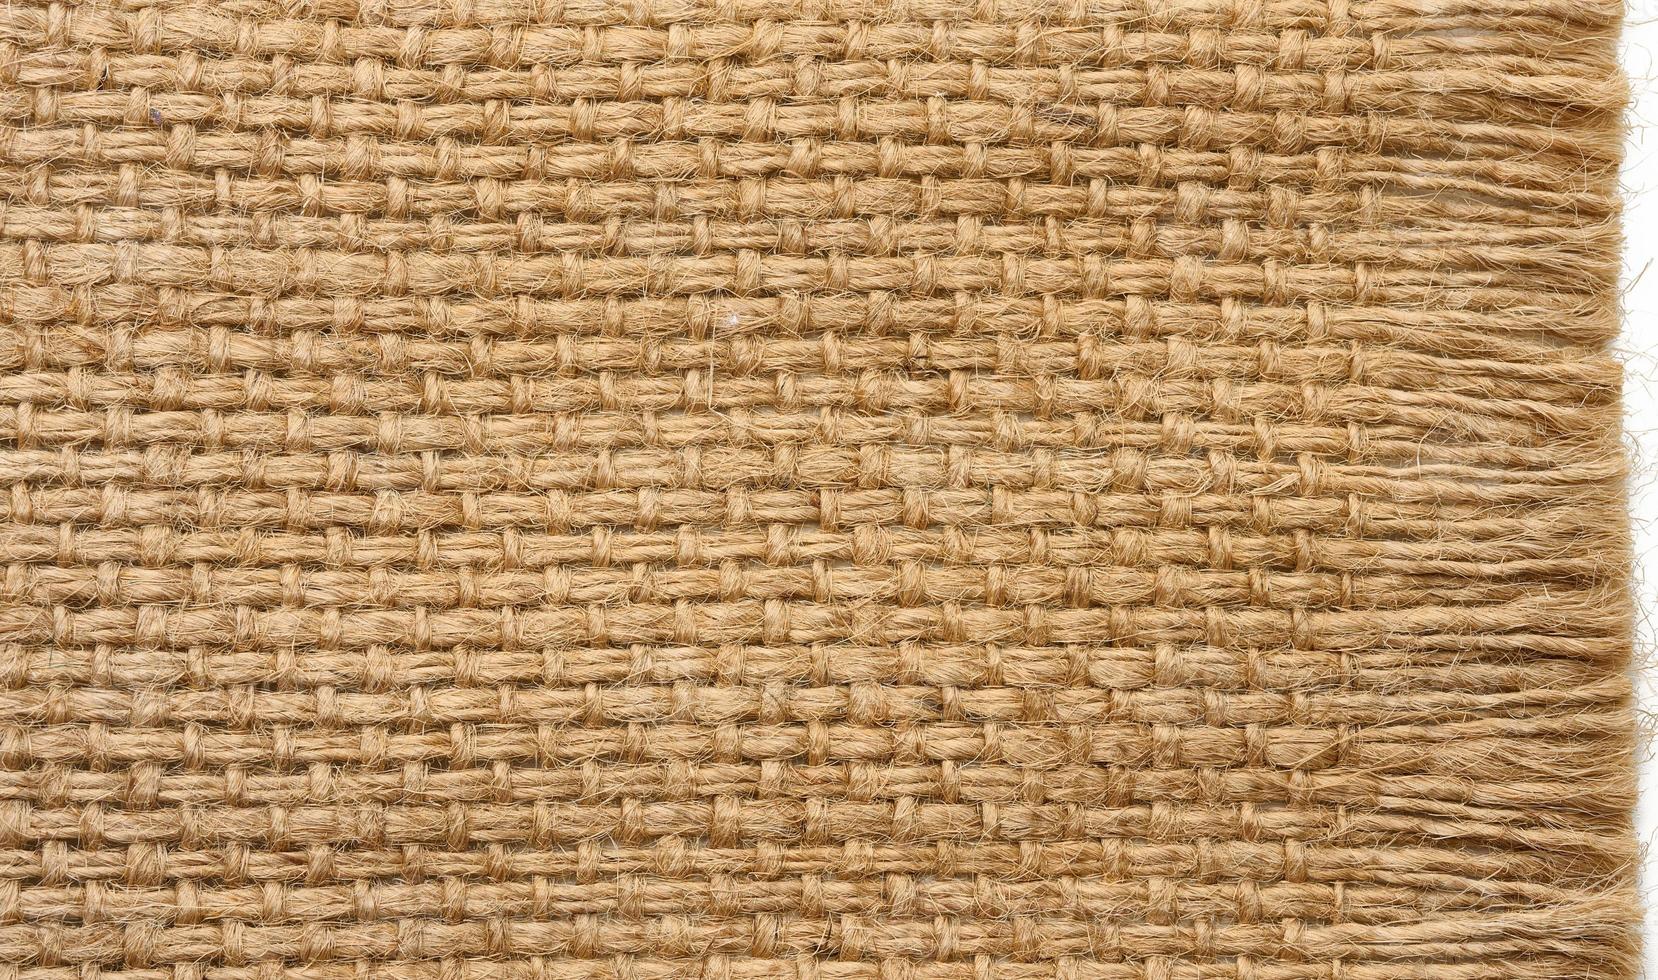 texture de toile de jute brune, tissu rugueux avec fibres pour sacs, macro photo